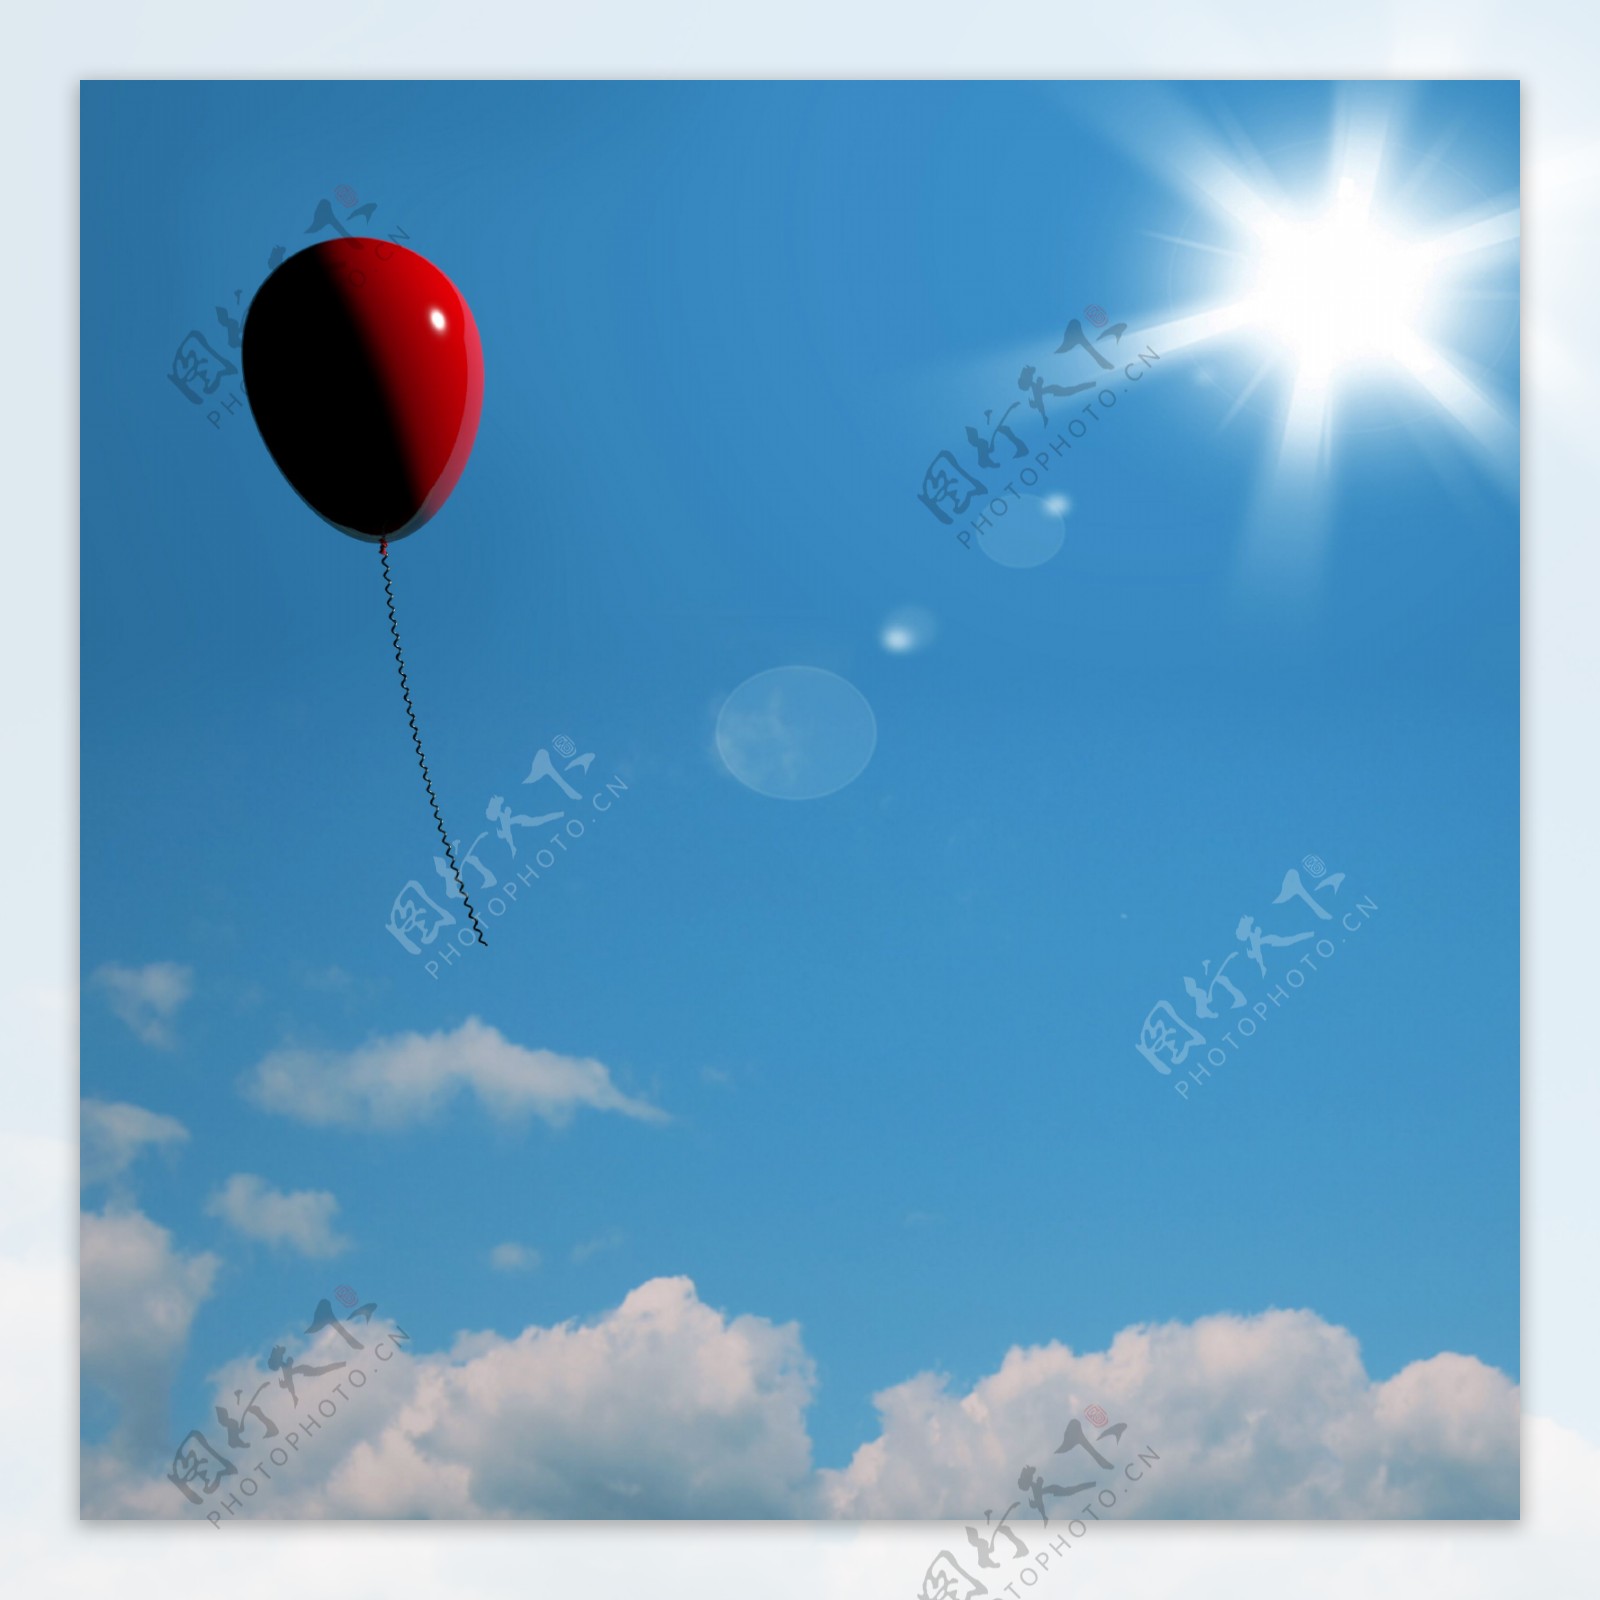 红气球飞升代表自由或独处